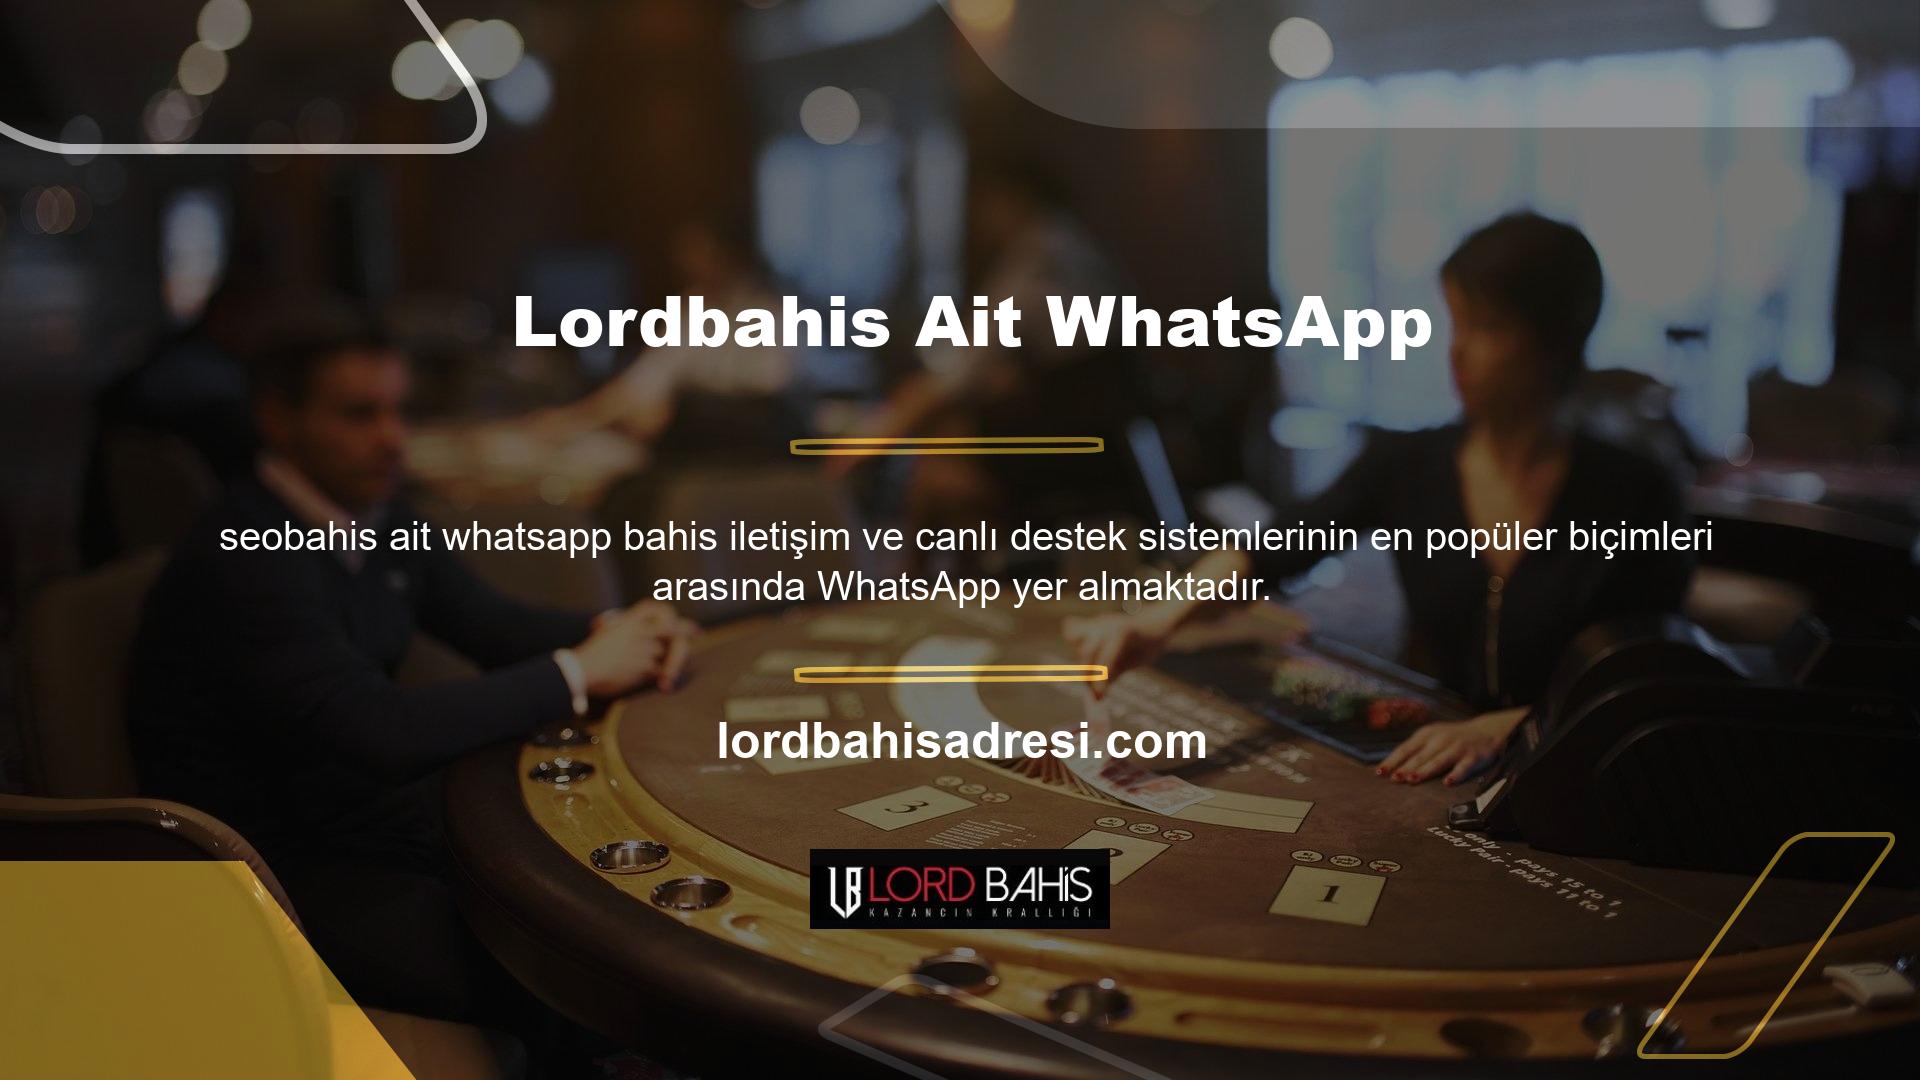 Anlık mesajlaşma konusunda destek için her zaman casino sitesinin Whatsapp temsilcisine ulaşabilirsiniz